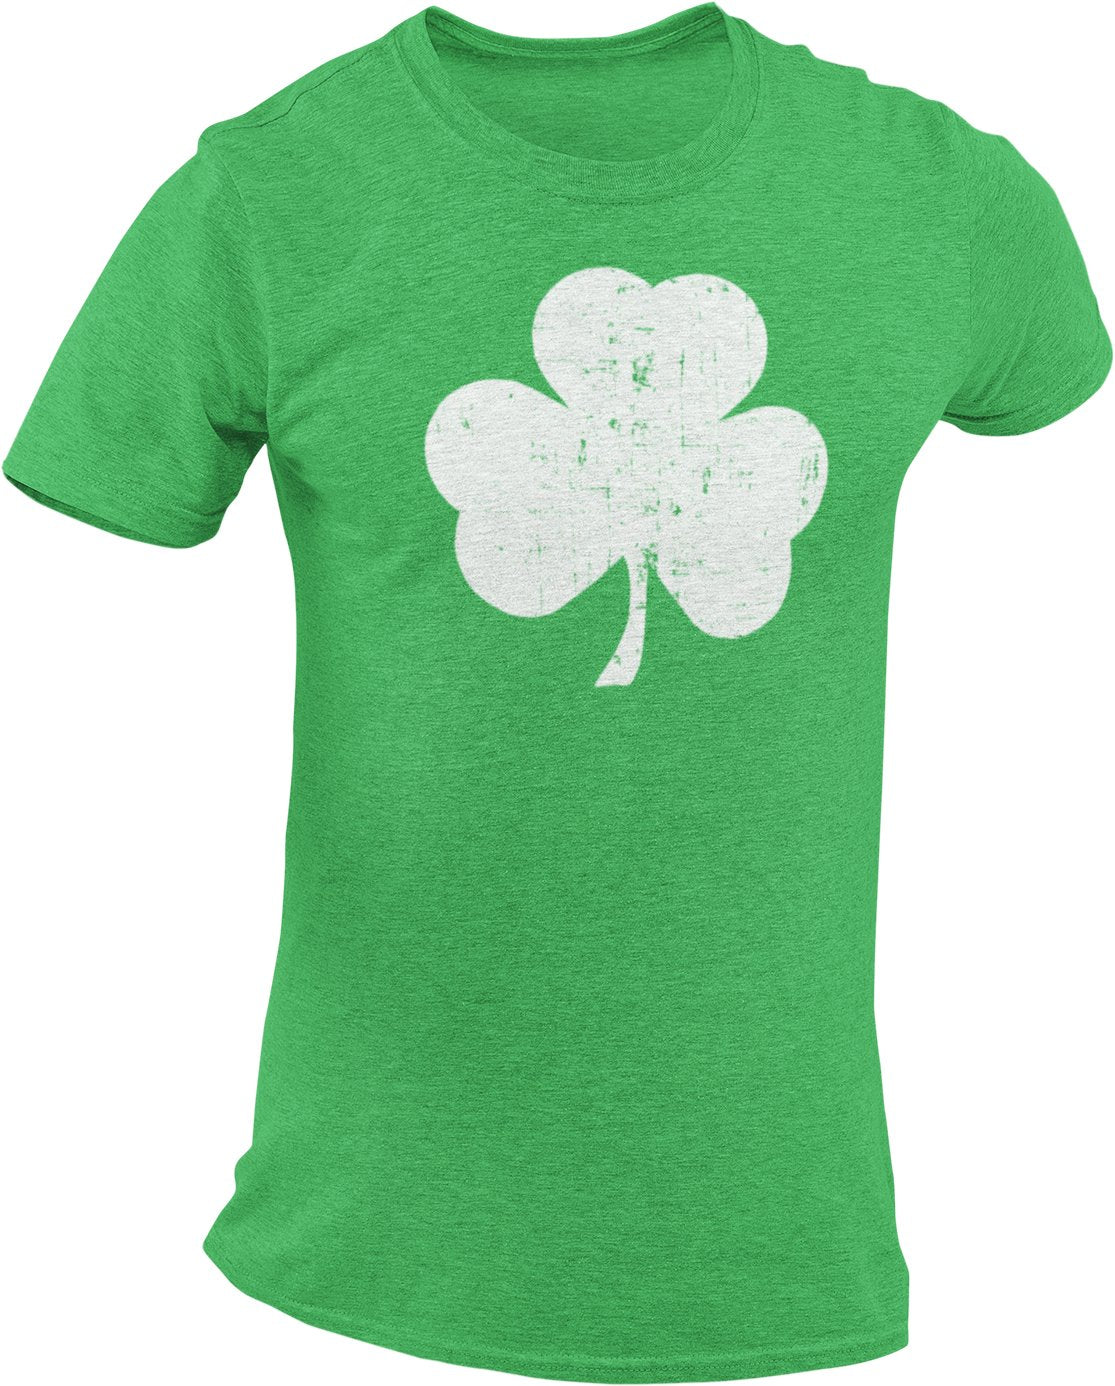 T-shirt Shamrock pour hommes (grand motif vieilli, vert chiné)